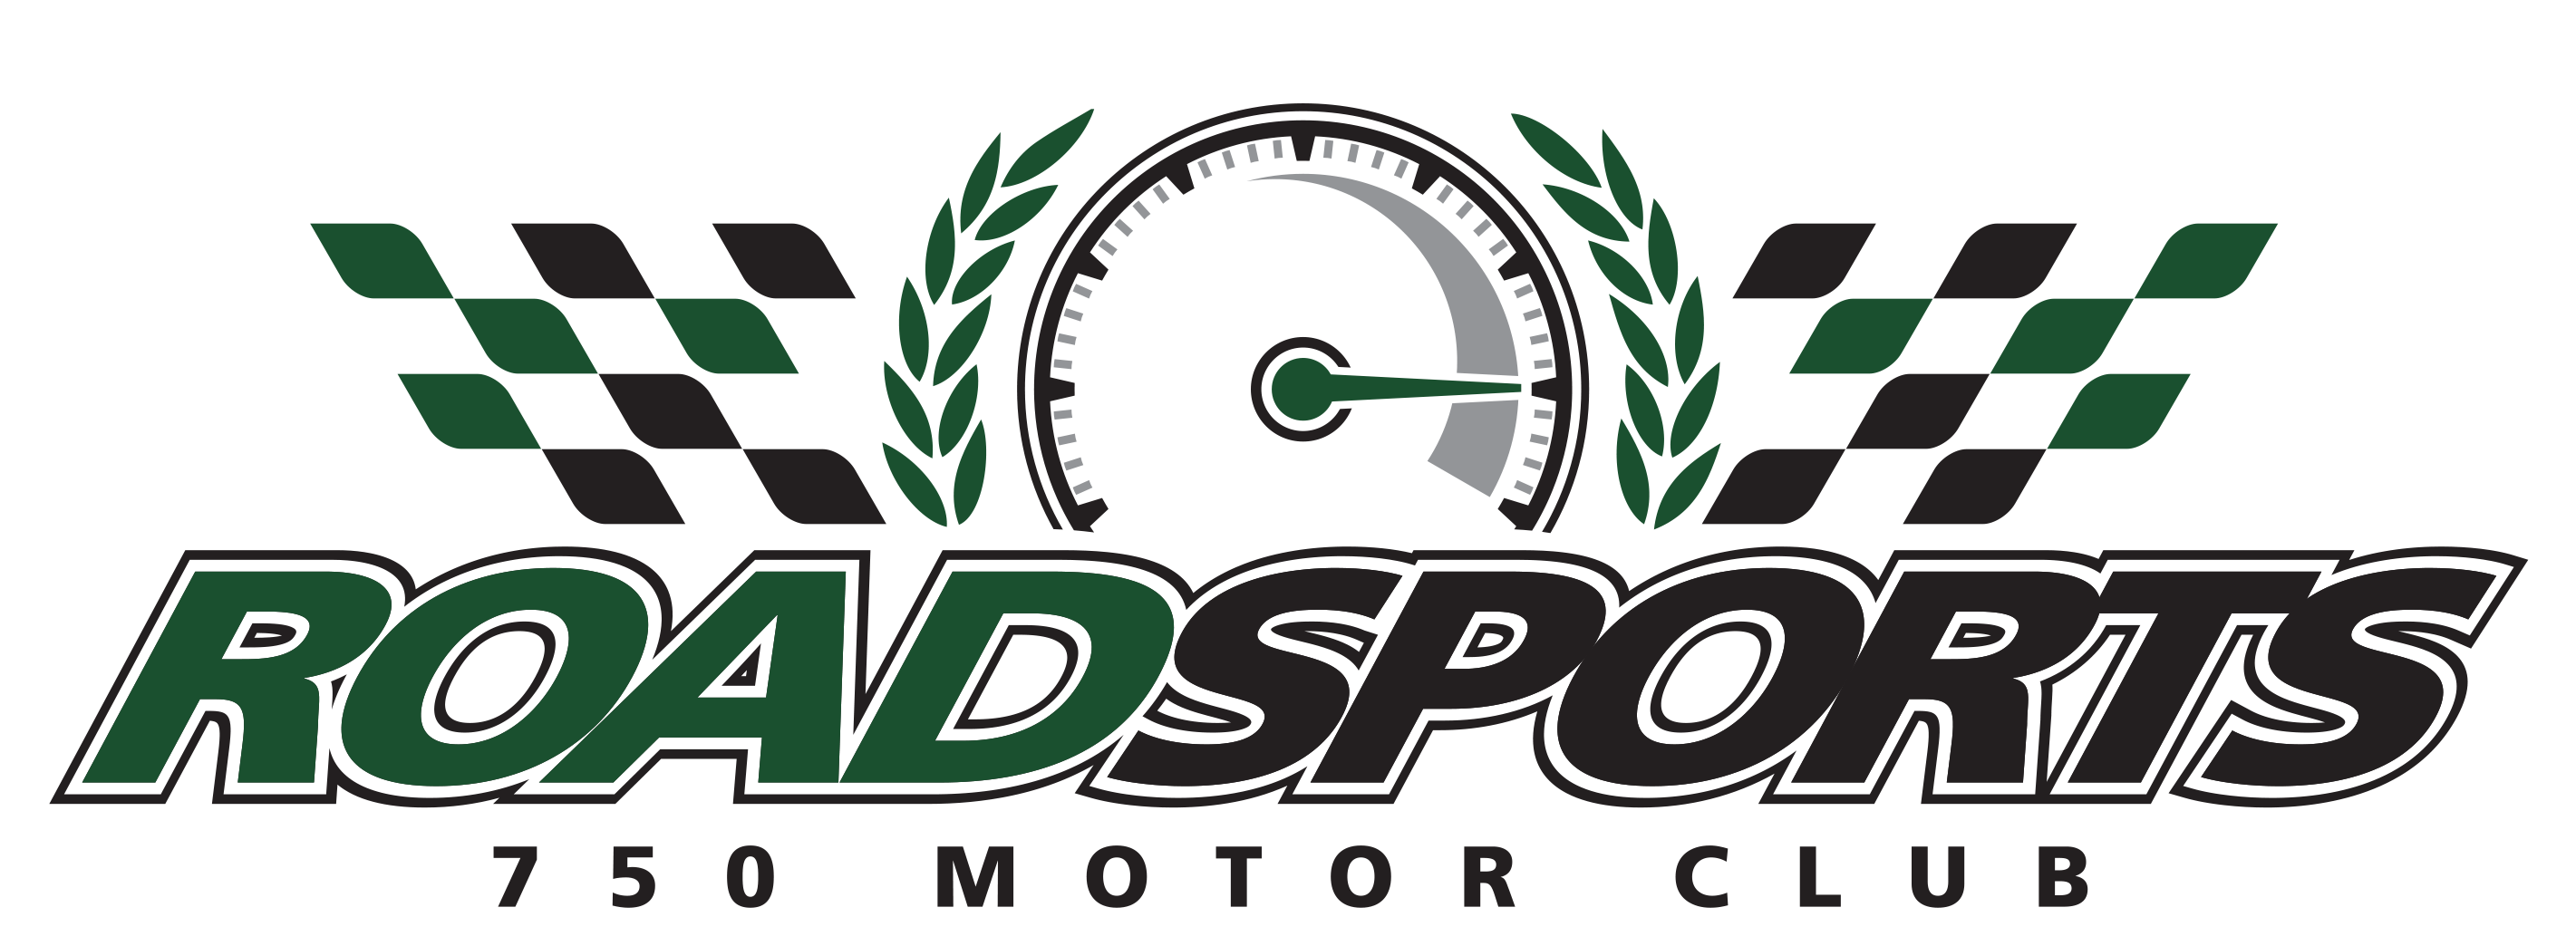 750 Motor Club - Roadsports